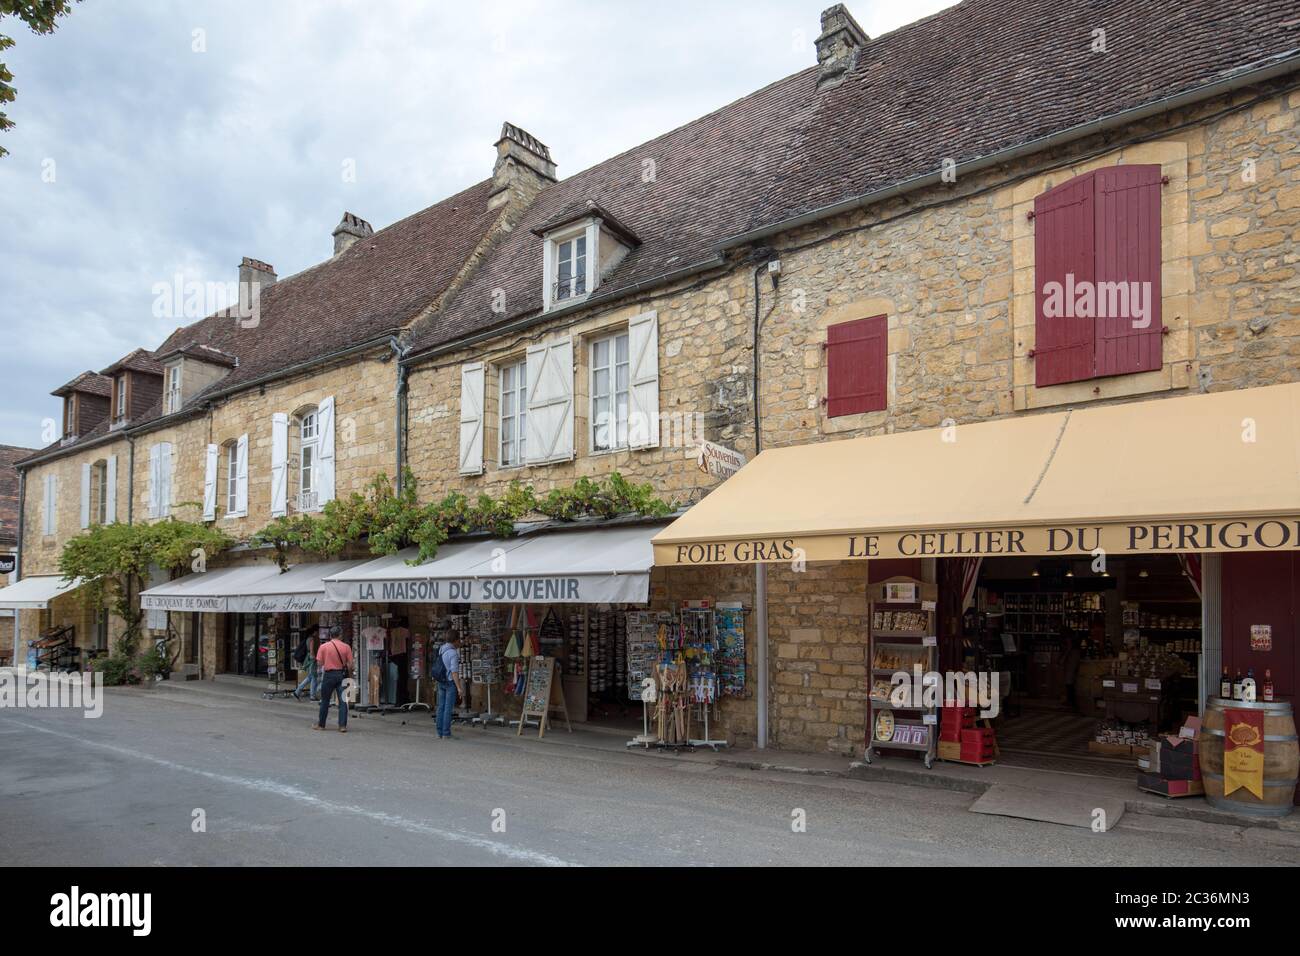 Domme, Frankreich - 5 September, 2018: die Touristen, die in der mittelalterlichen Stadt Sarlat-la-Canéda in der Dordogne Frankreich. Stockfoto